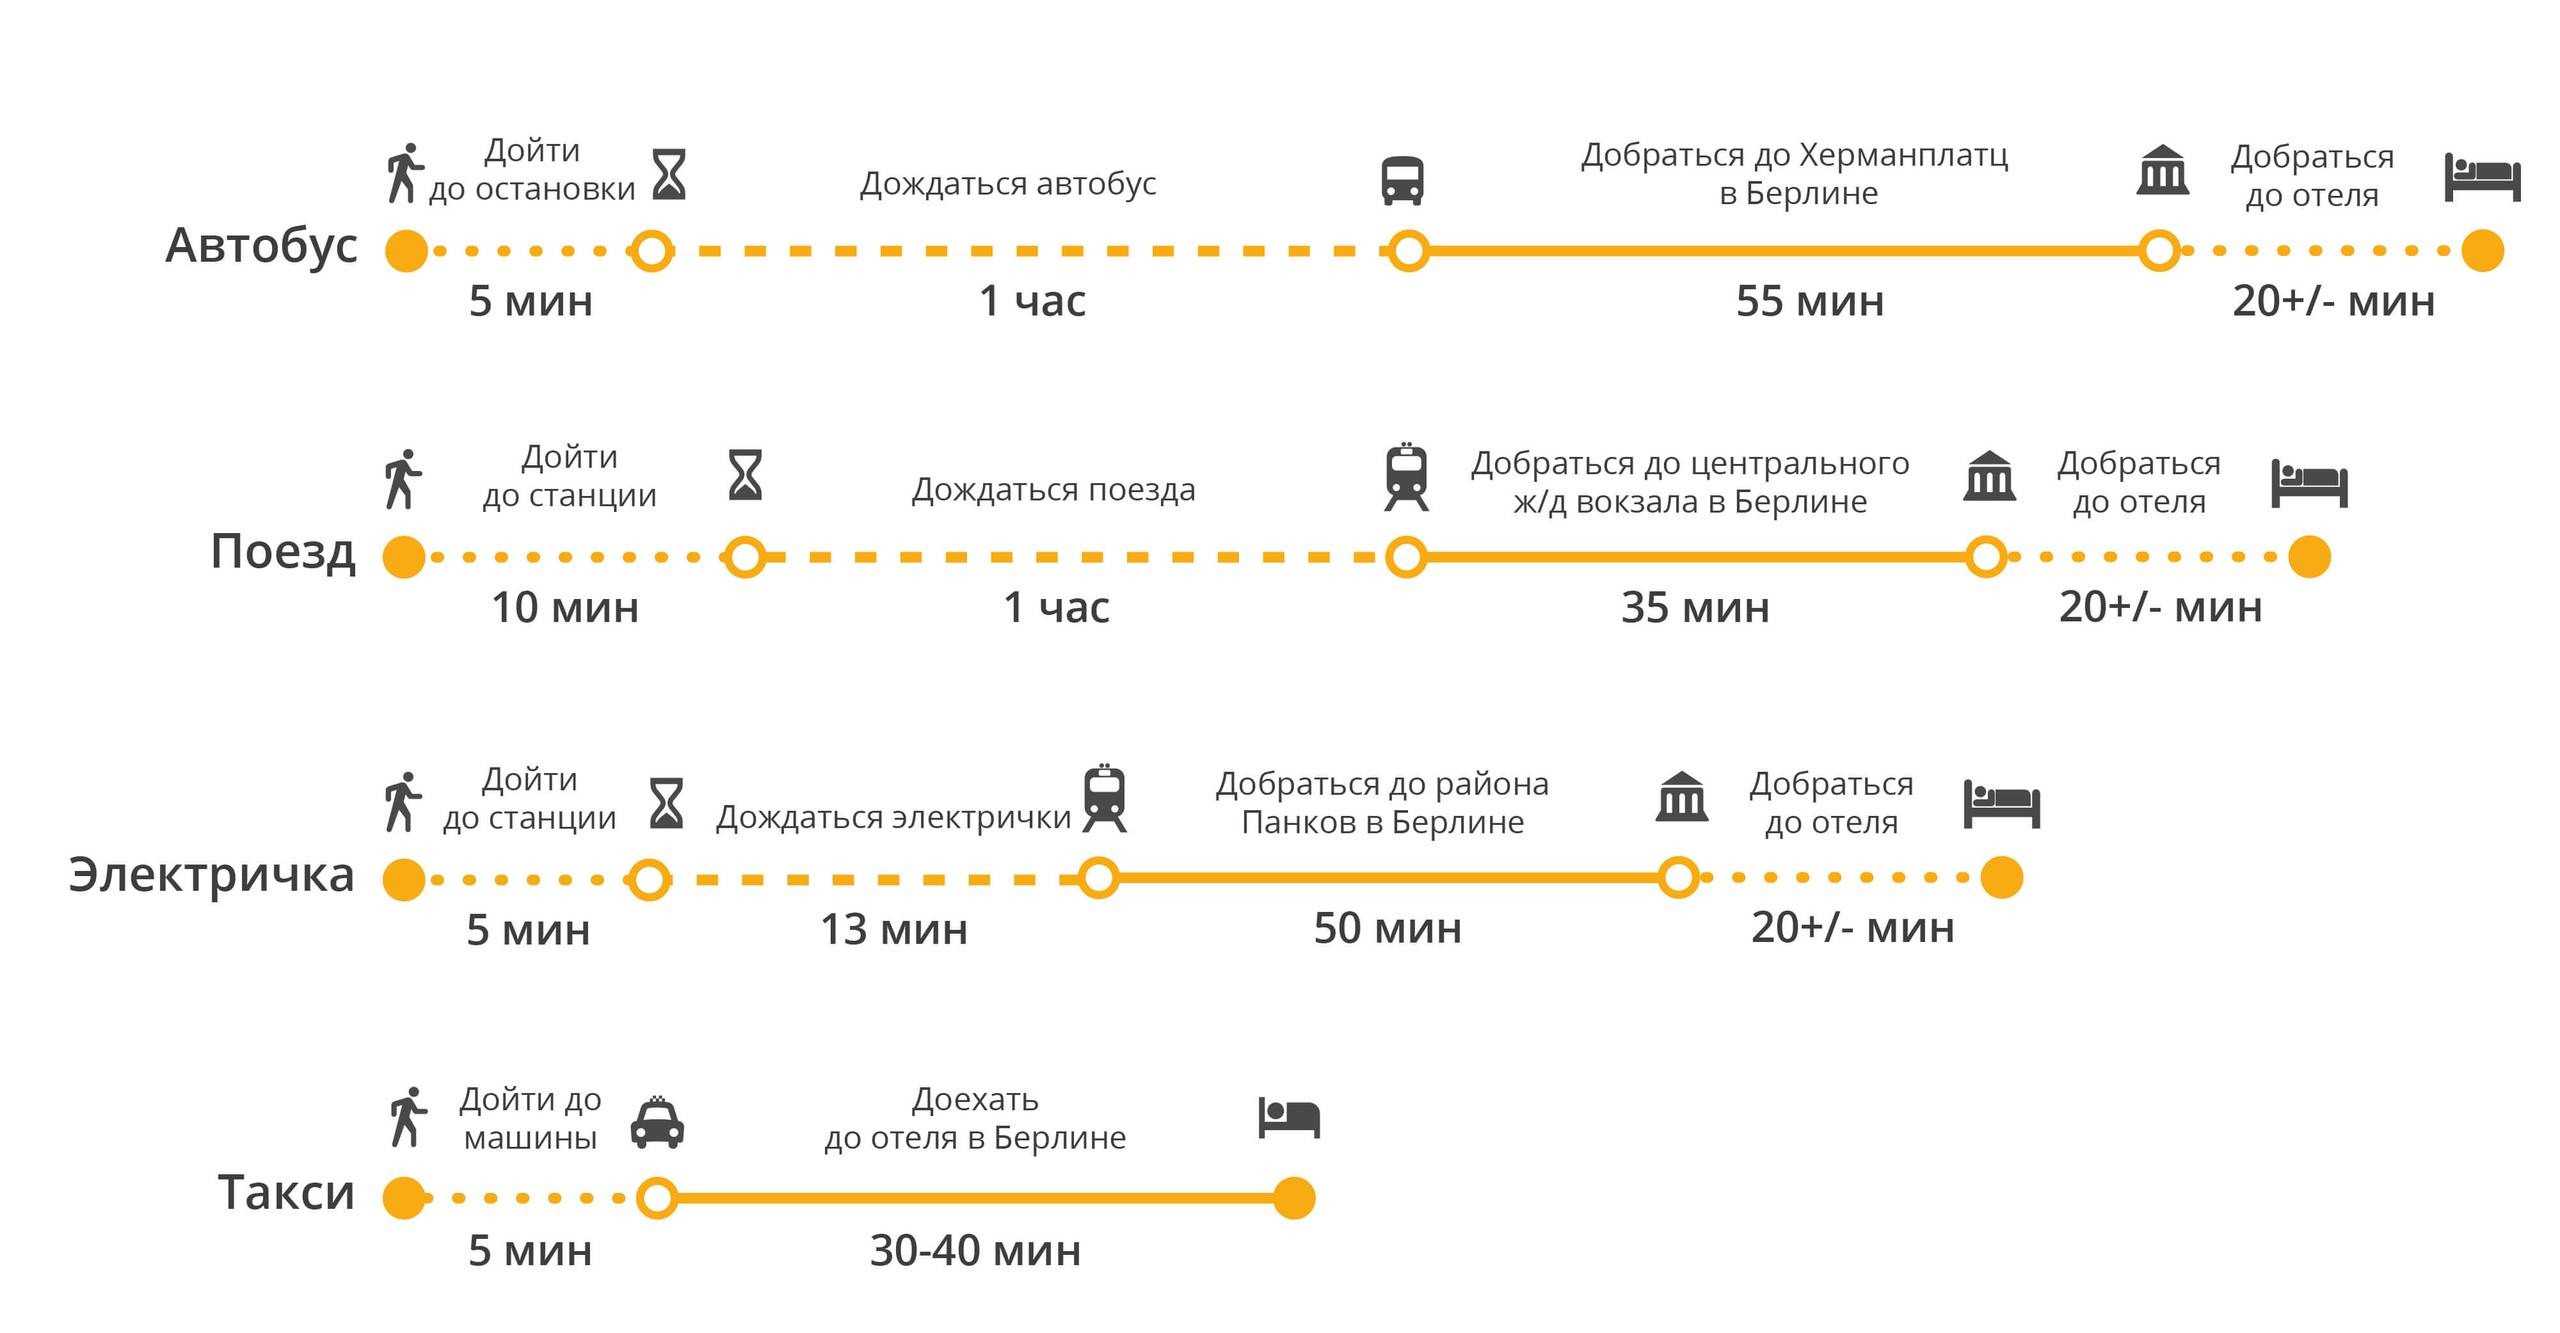 Как добраться из аэропорта шёнефельд до берлина: электричка, метро, такси. расстояние, цены на билеты и расписание 2021 на туристер.ру